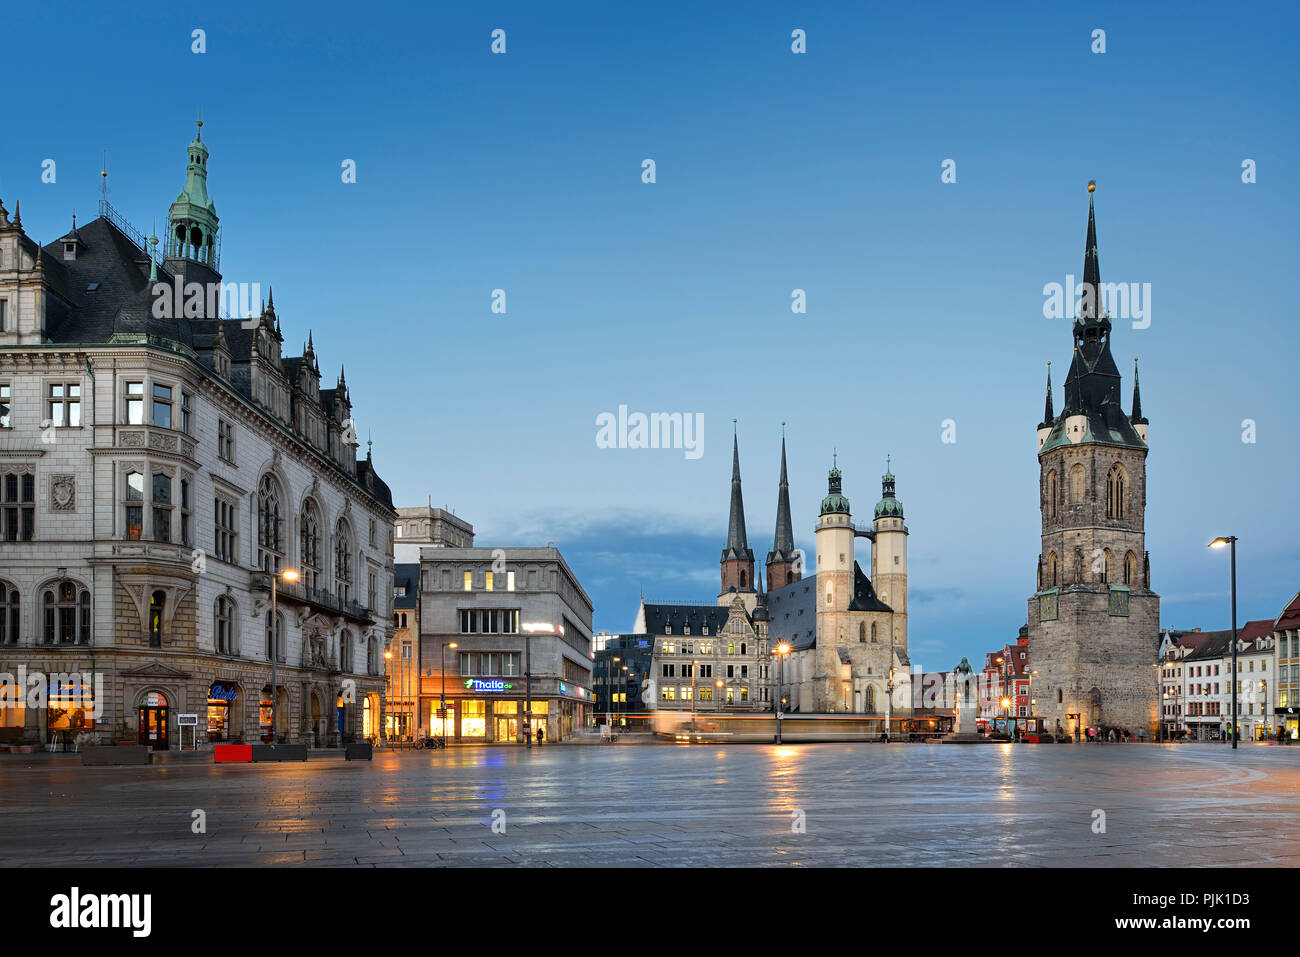 Alemania, en el Estado federado de Sajonia-Anhalt, Halle (Saale), la plaza del mercado, de izquierda a derecha, el ayuntamiento, la iglesia del mercado y la Torre Roja, al anochecer, estelas de luz del tranvía Foto de stock